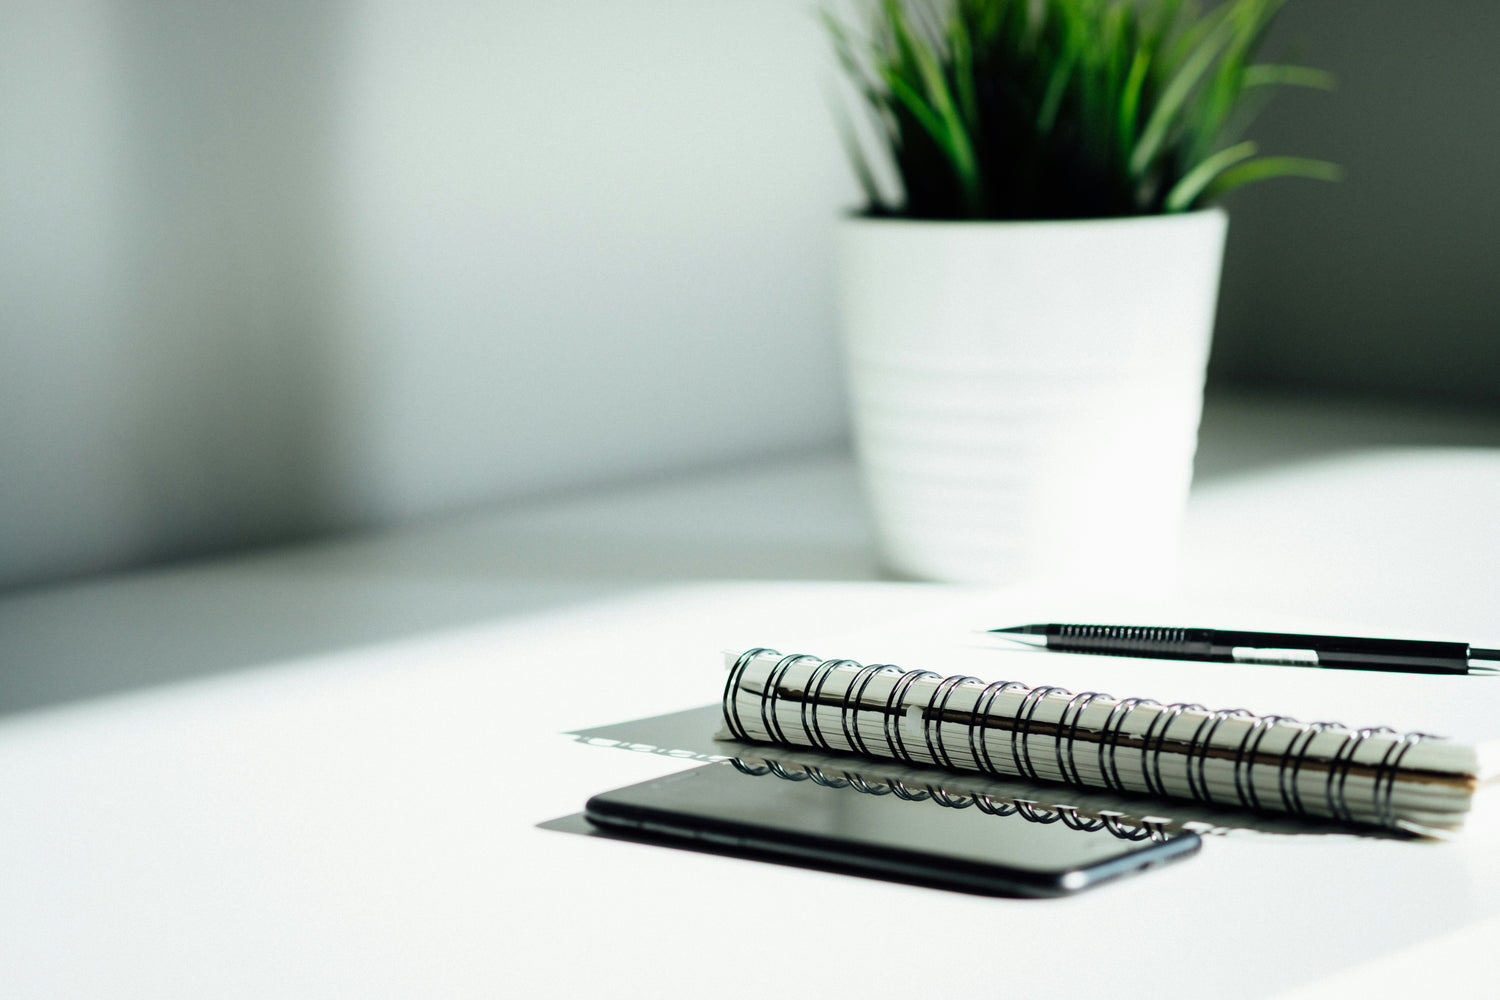 Kuglepind, notesblok, mobil og plante - minimalistisk hjælp med din privatøkonomi